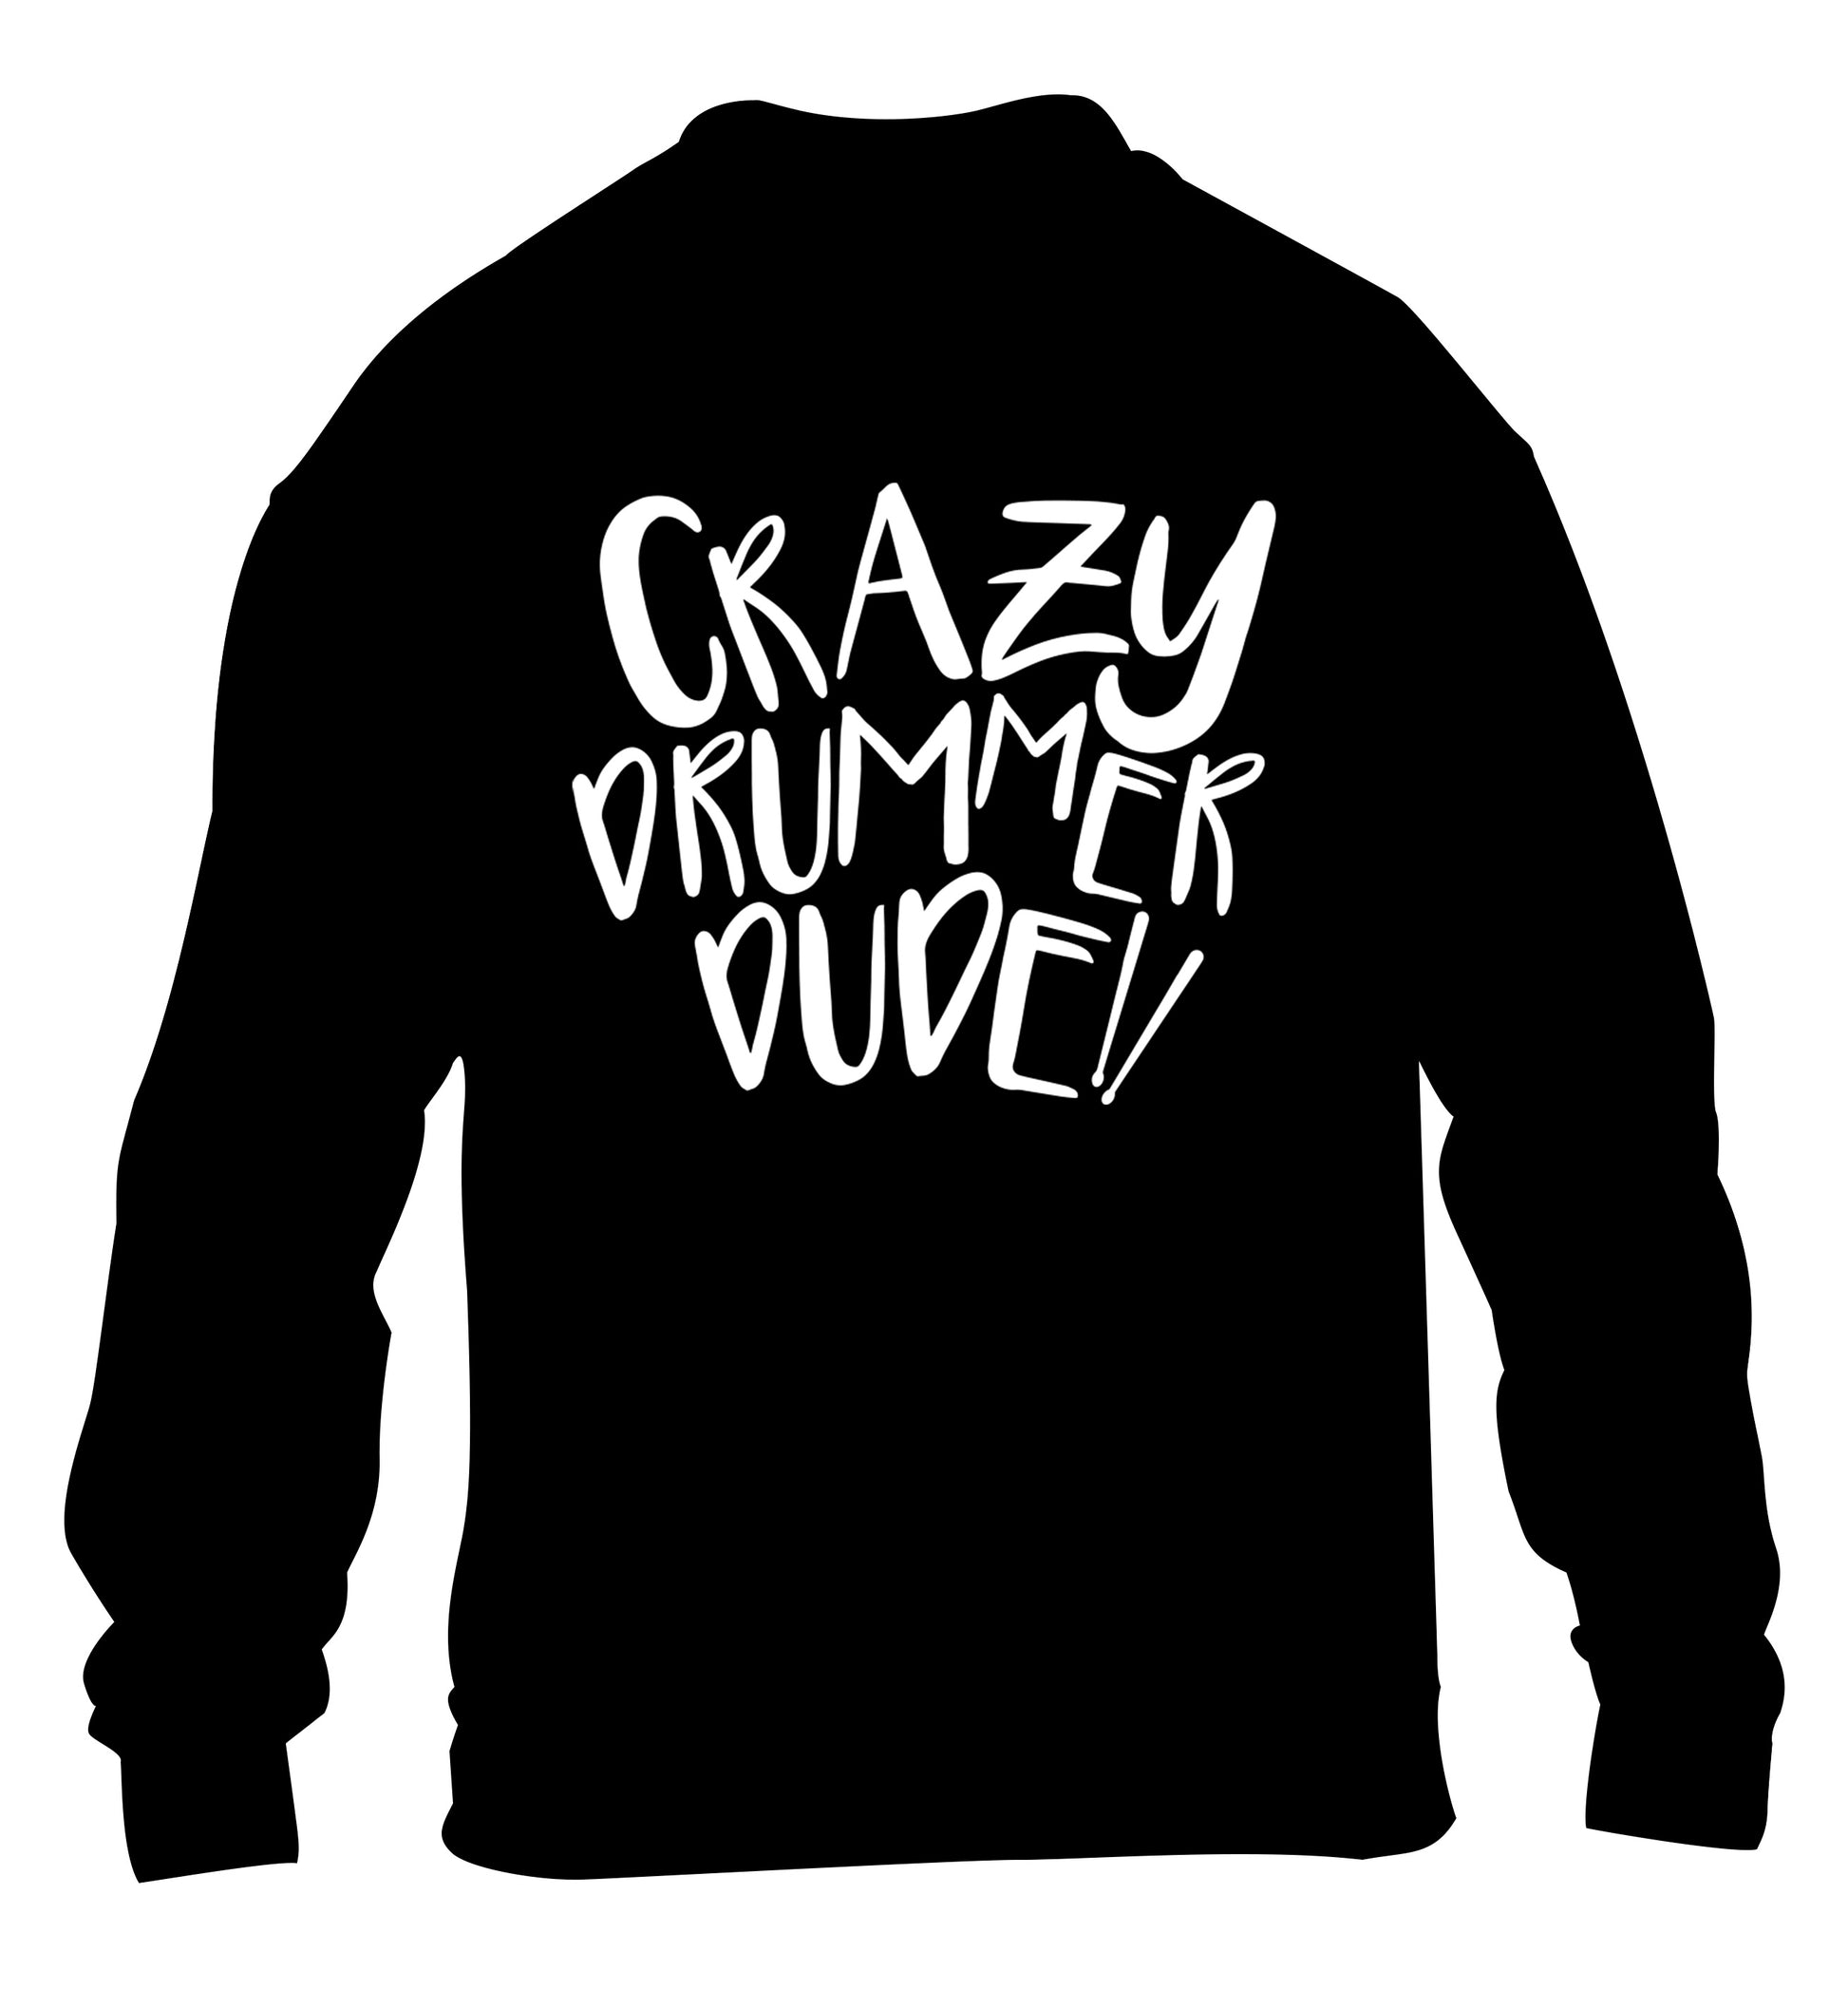 Crazy drummer dude children's black sweater 12-14 Years